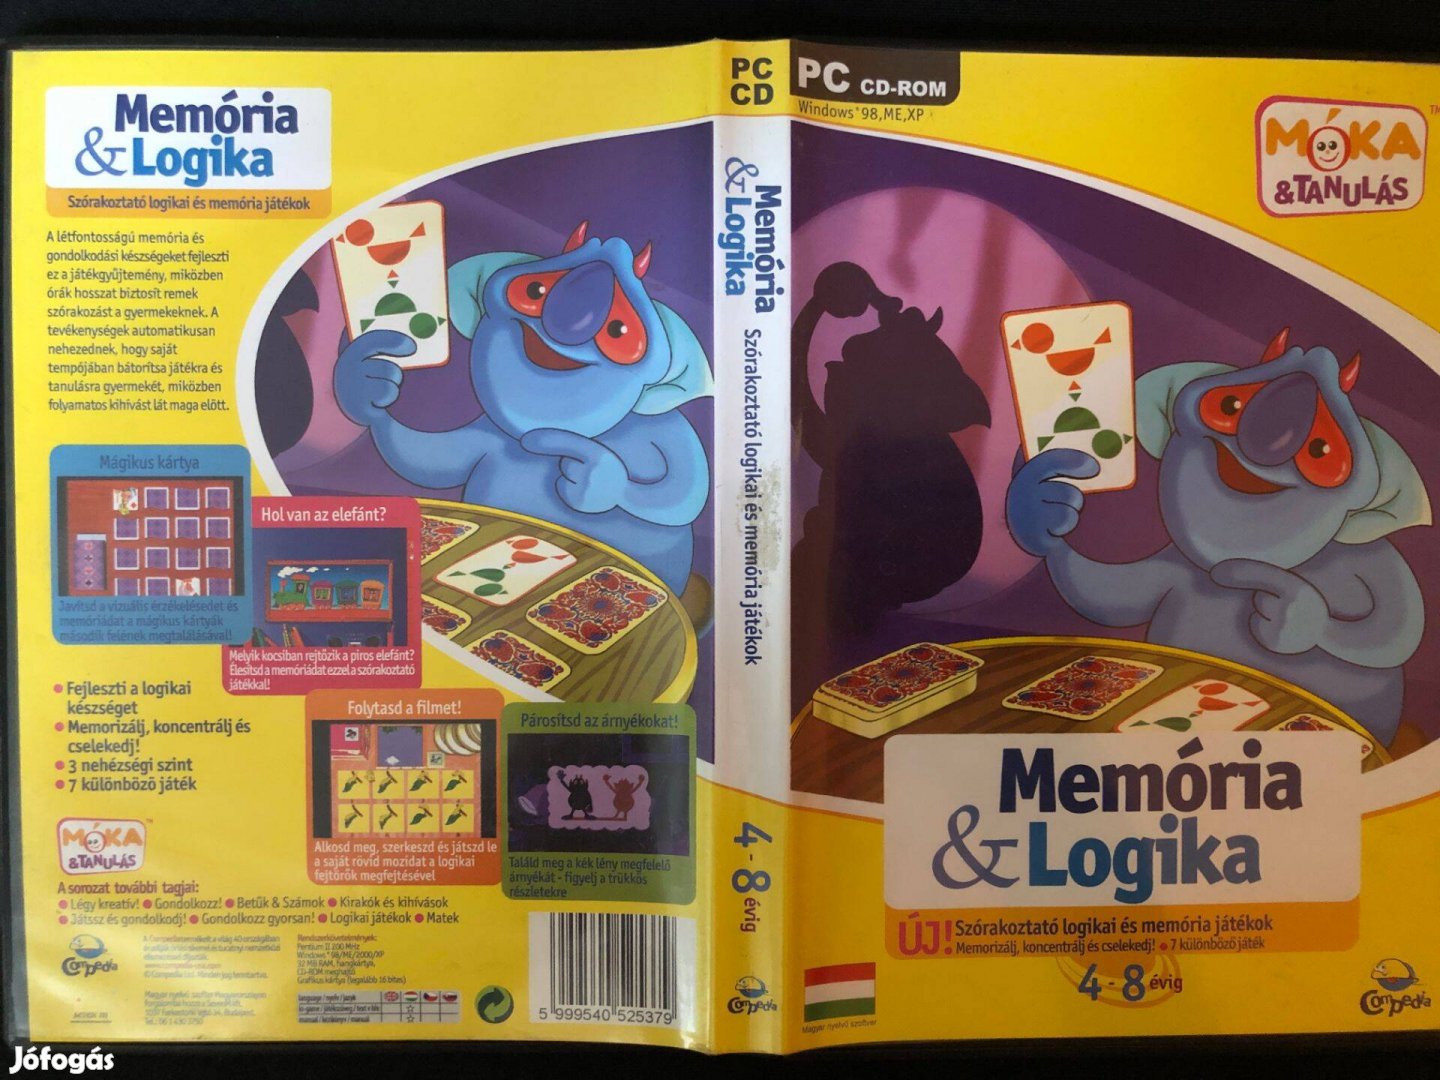 Memória és Logika Játékok 4-8 éves gyerekeknek (magyar nyelvű) PC